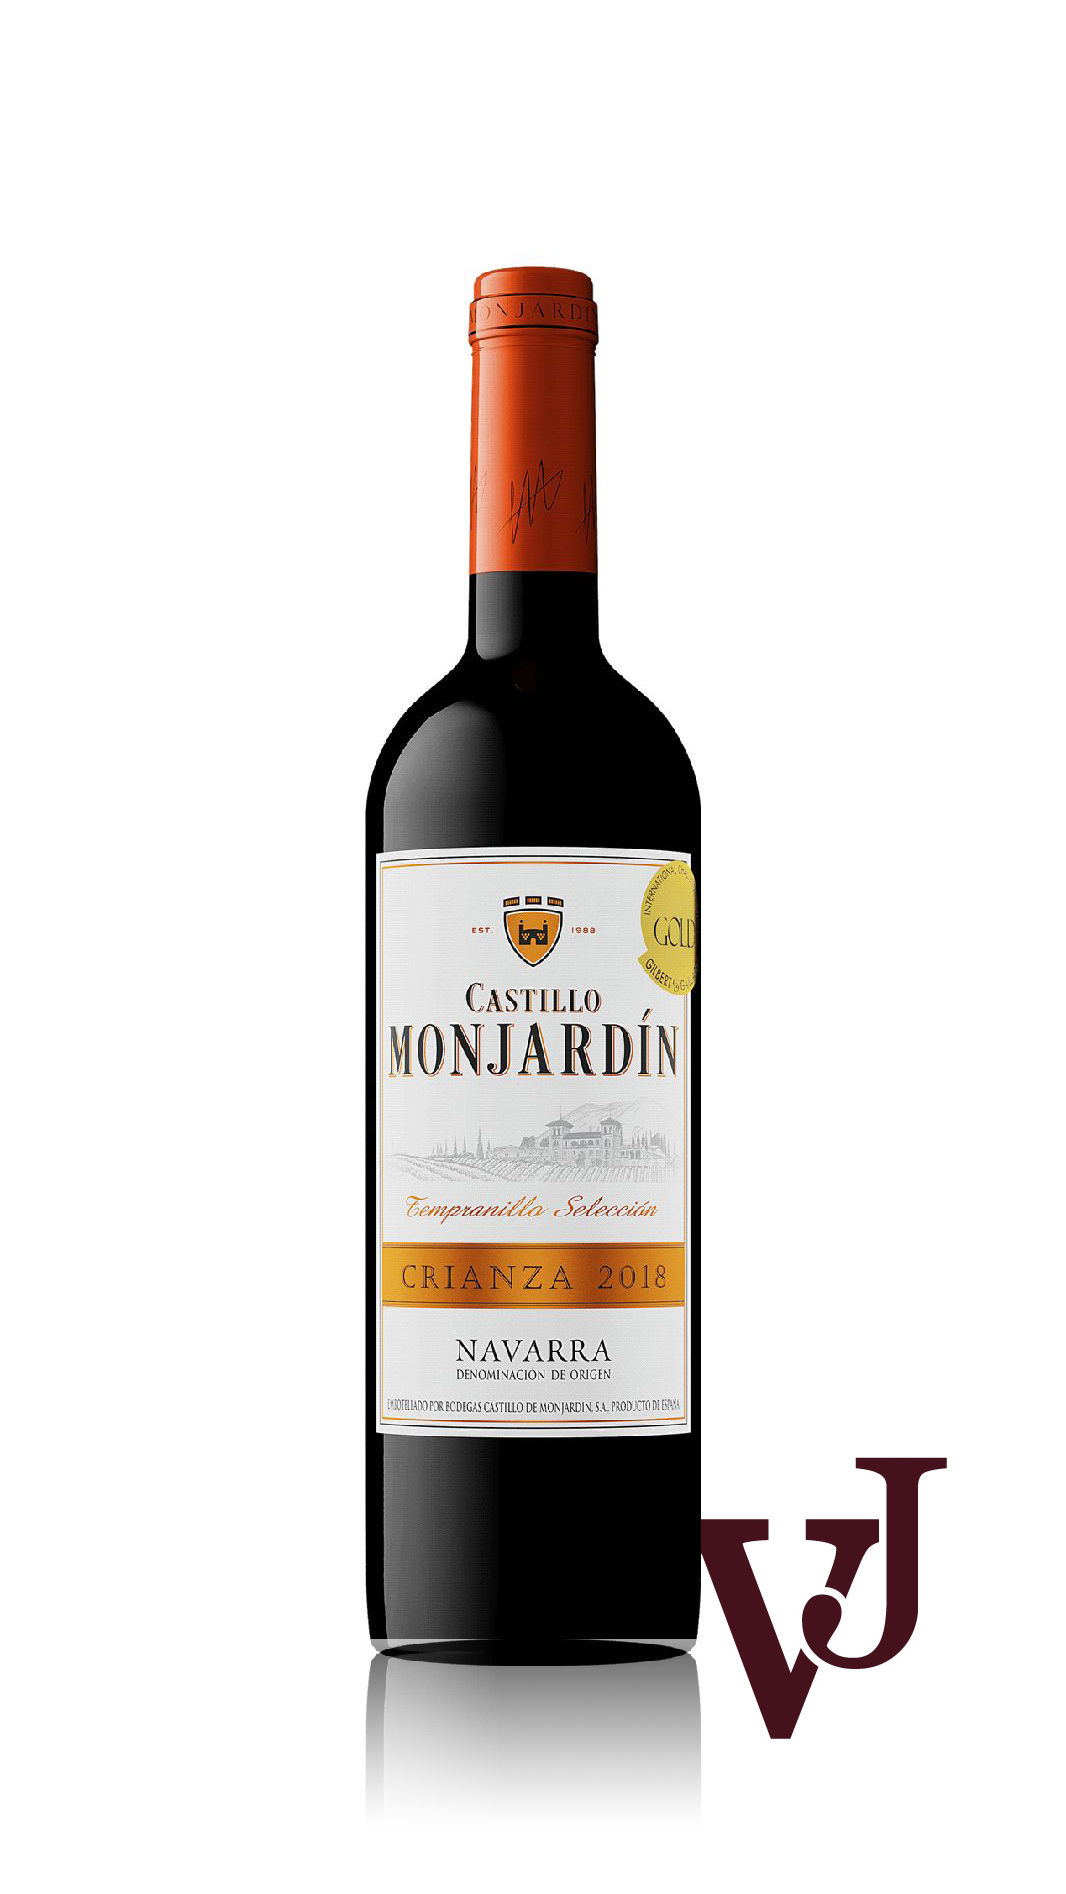 Rött Vin - Castillo Monjardin Navarra Crianza artikel nummer 203101 från producenten Castillo de Monjardin från området Spanien